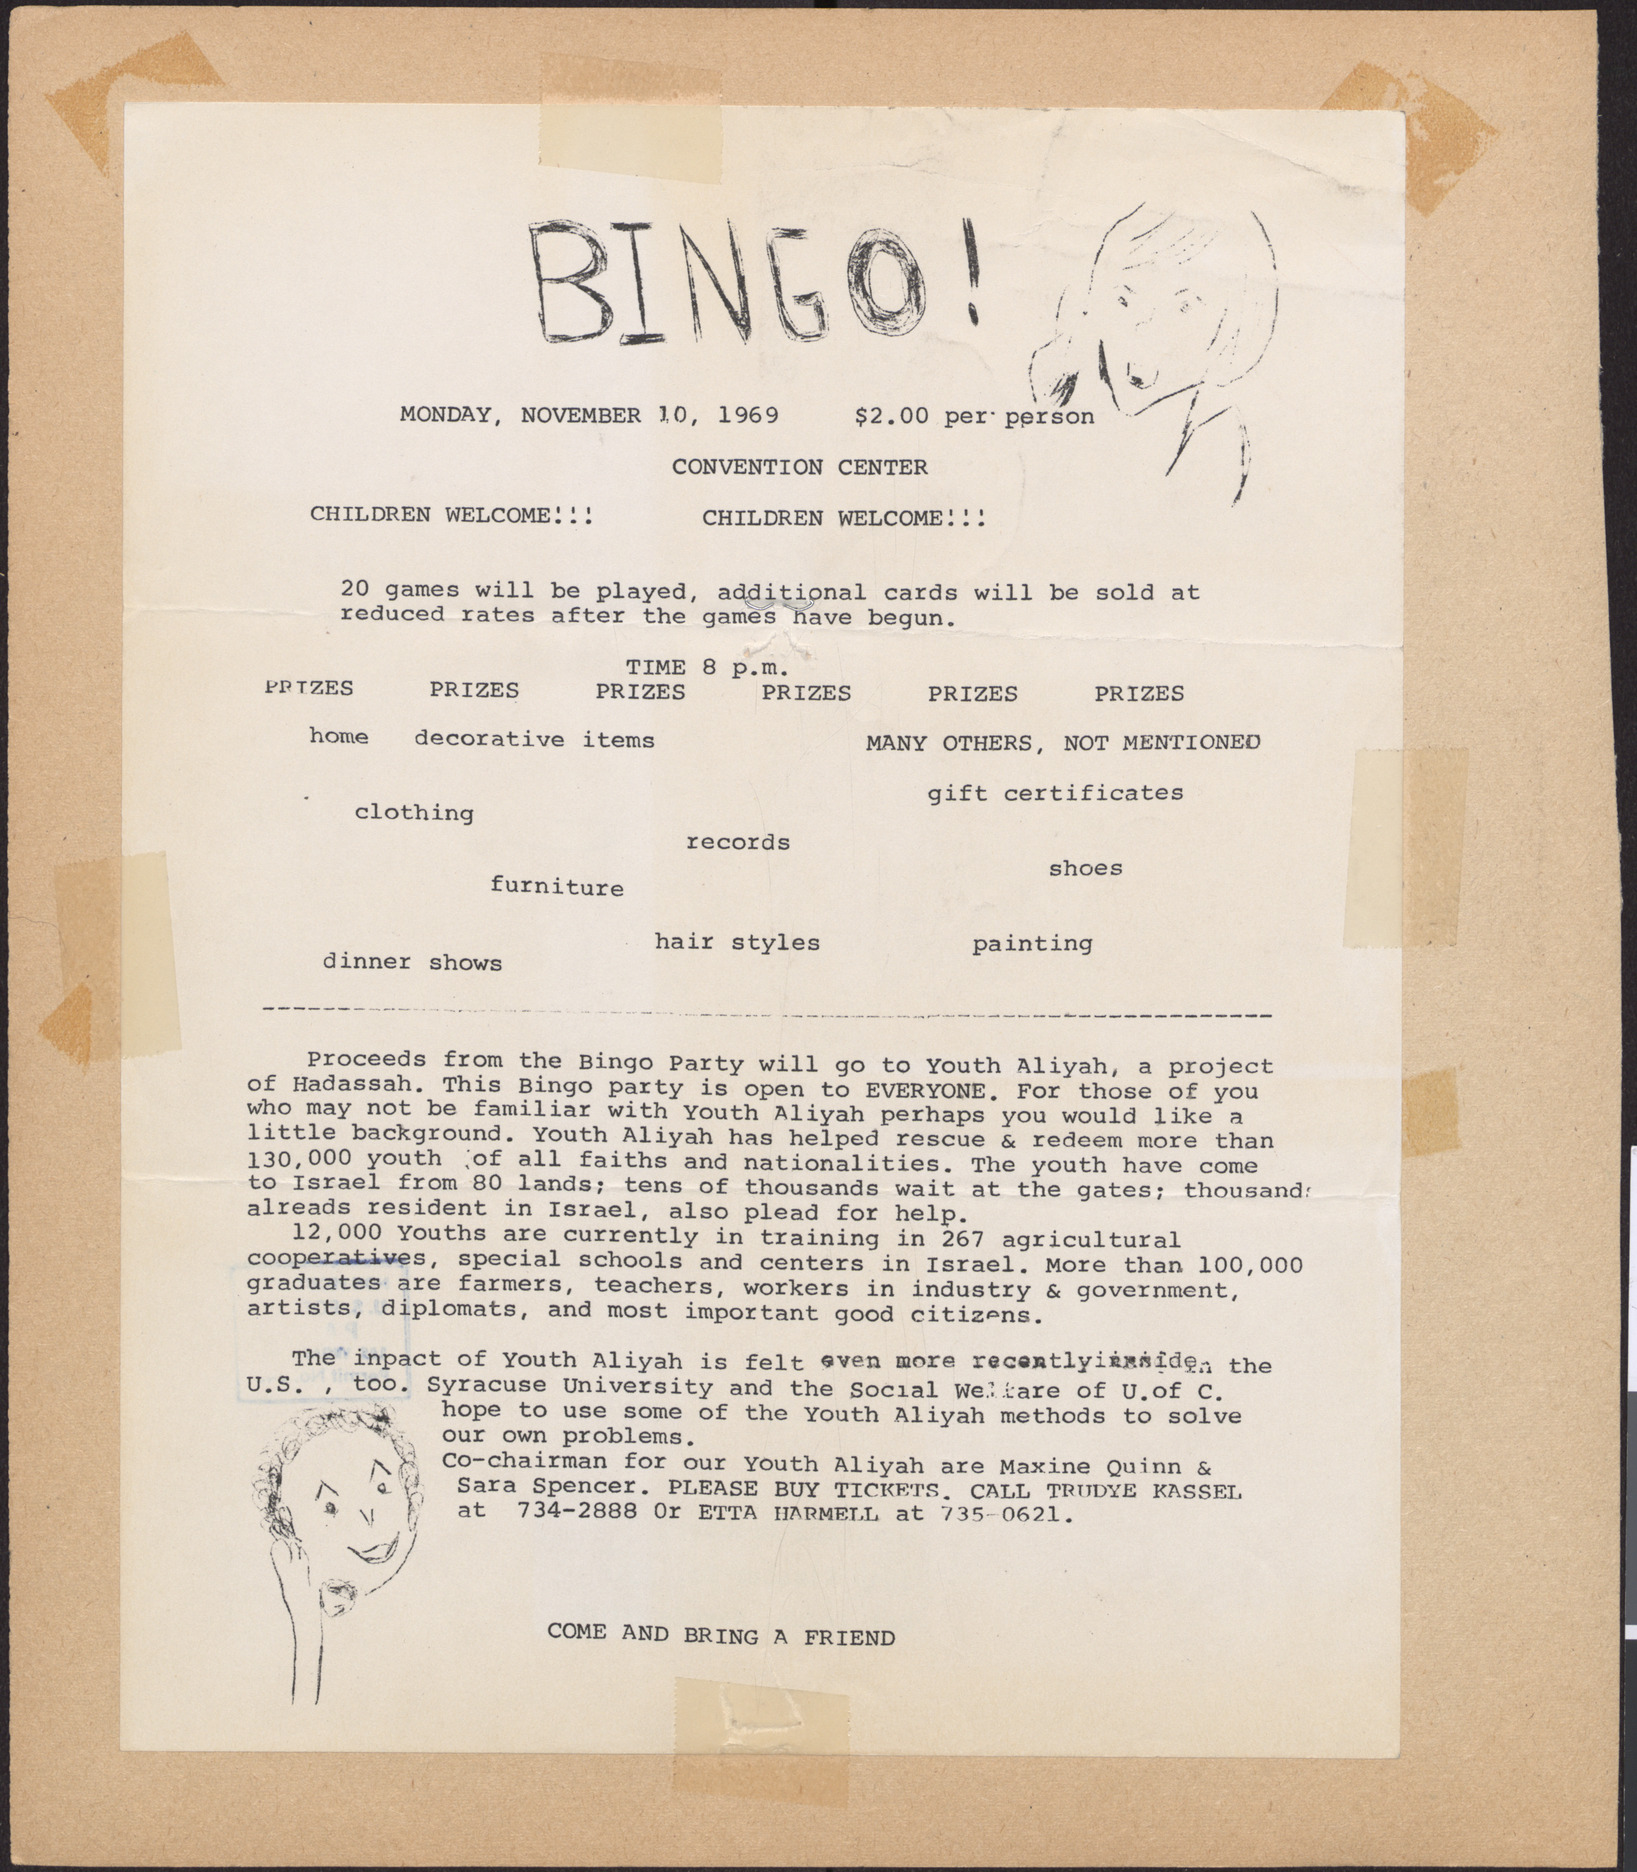 Flier for Bingo!, November 10, 1969